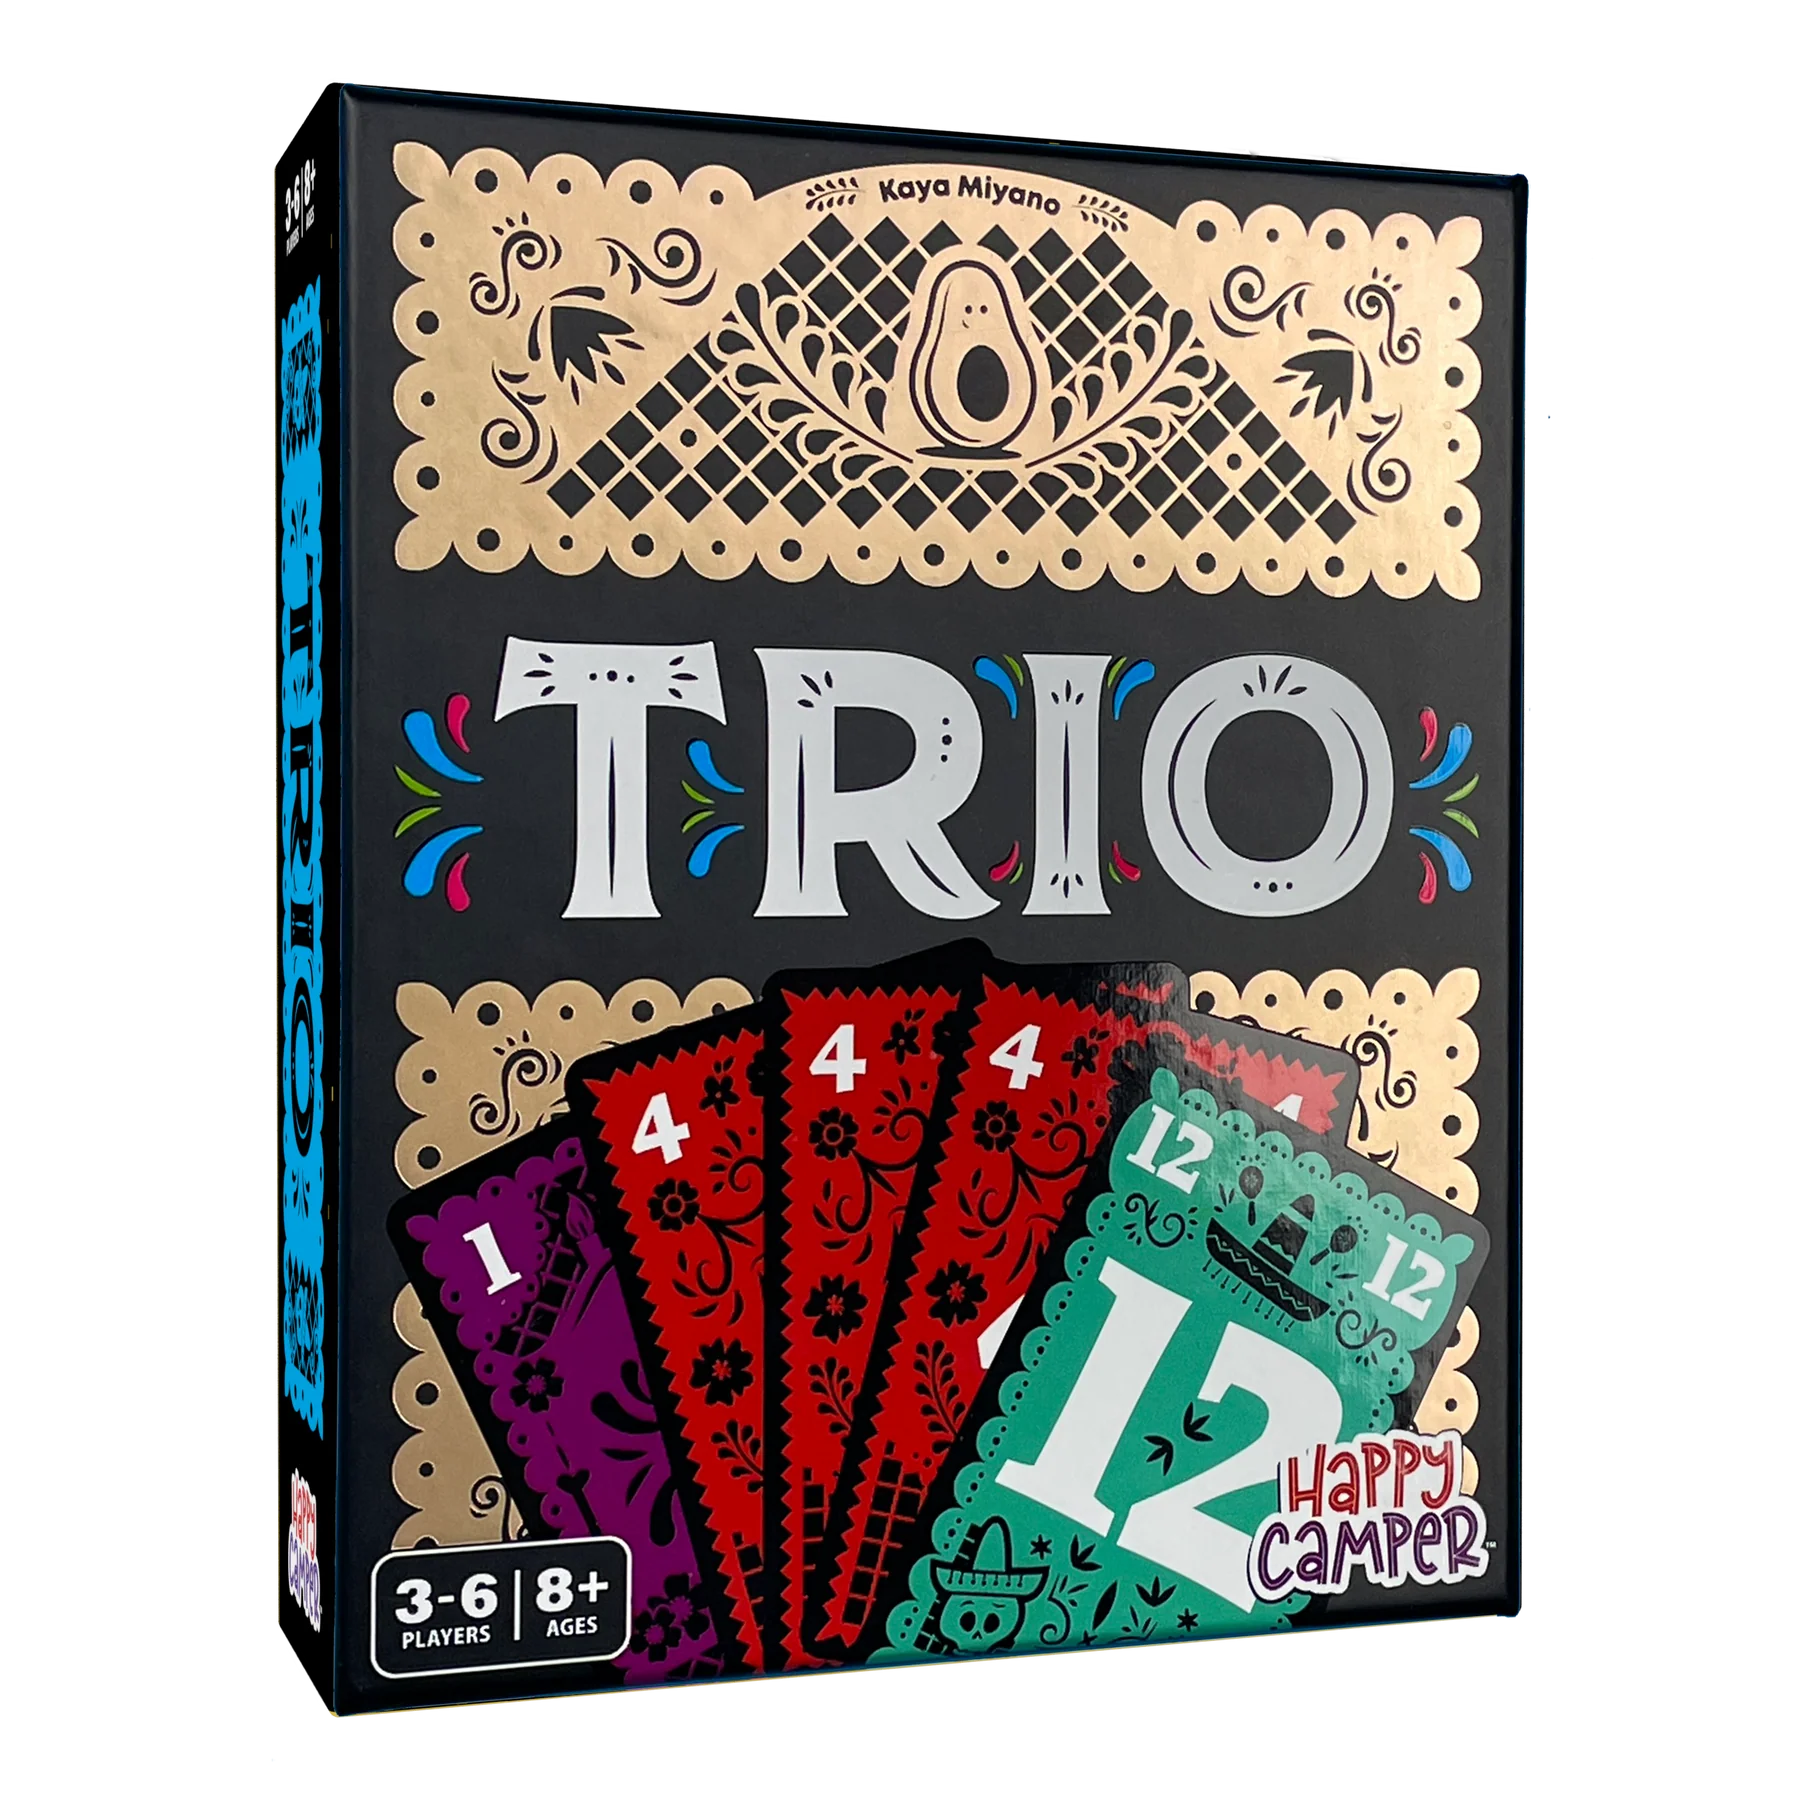 Trio Card Game